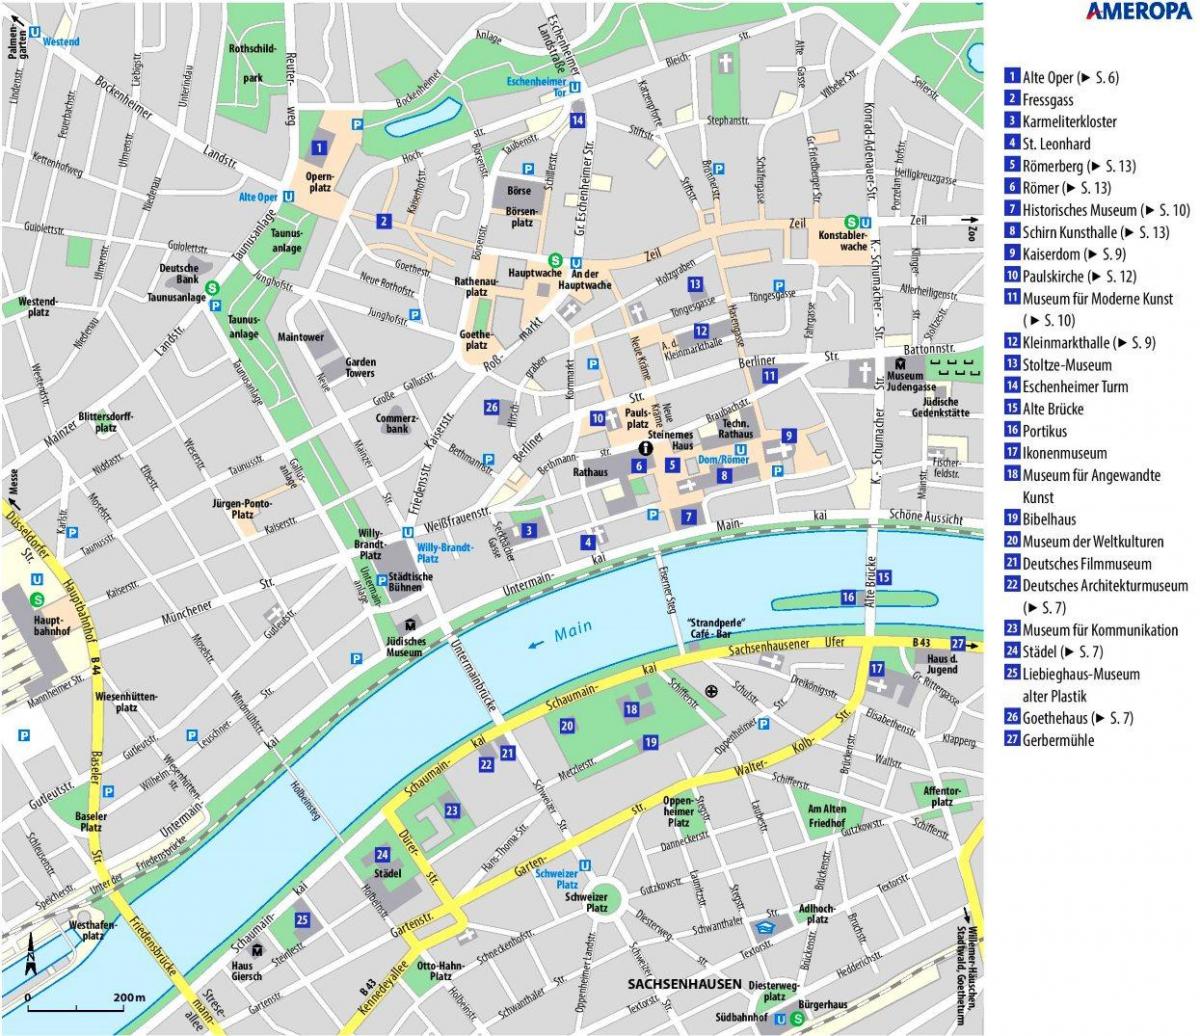 Mapa da cidade de Frankfurt